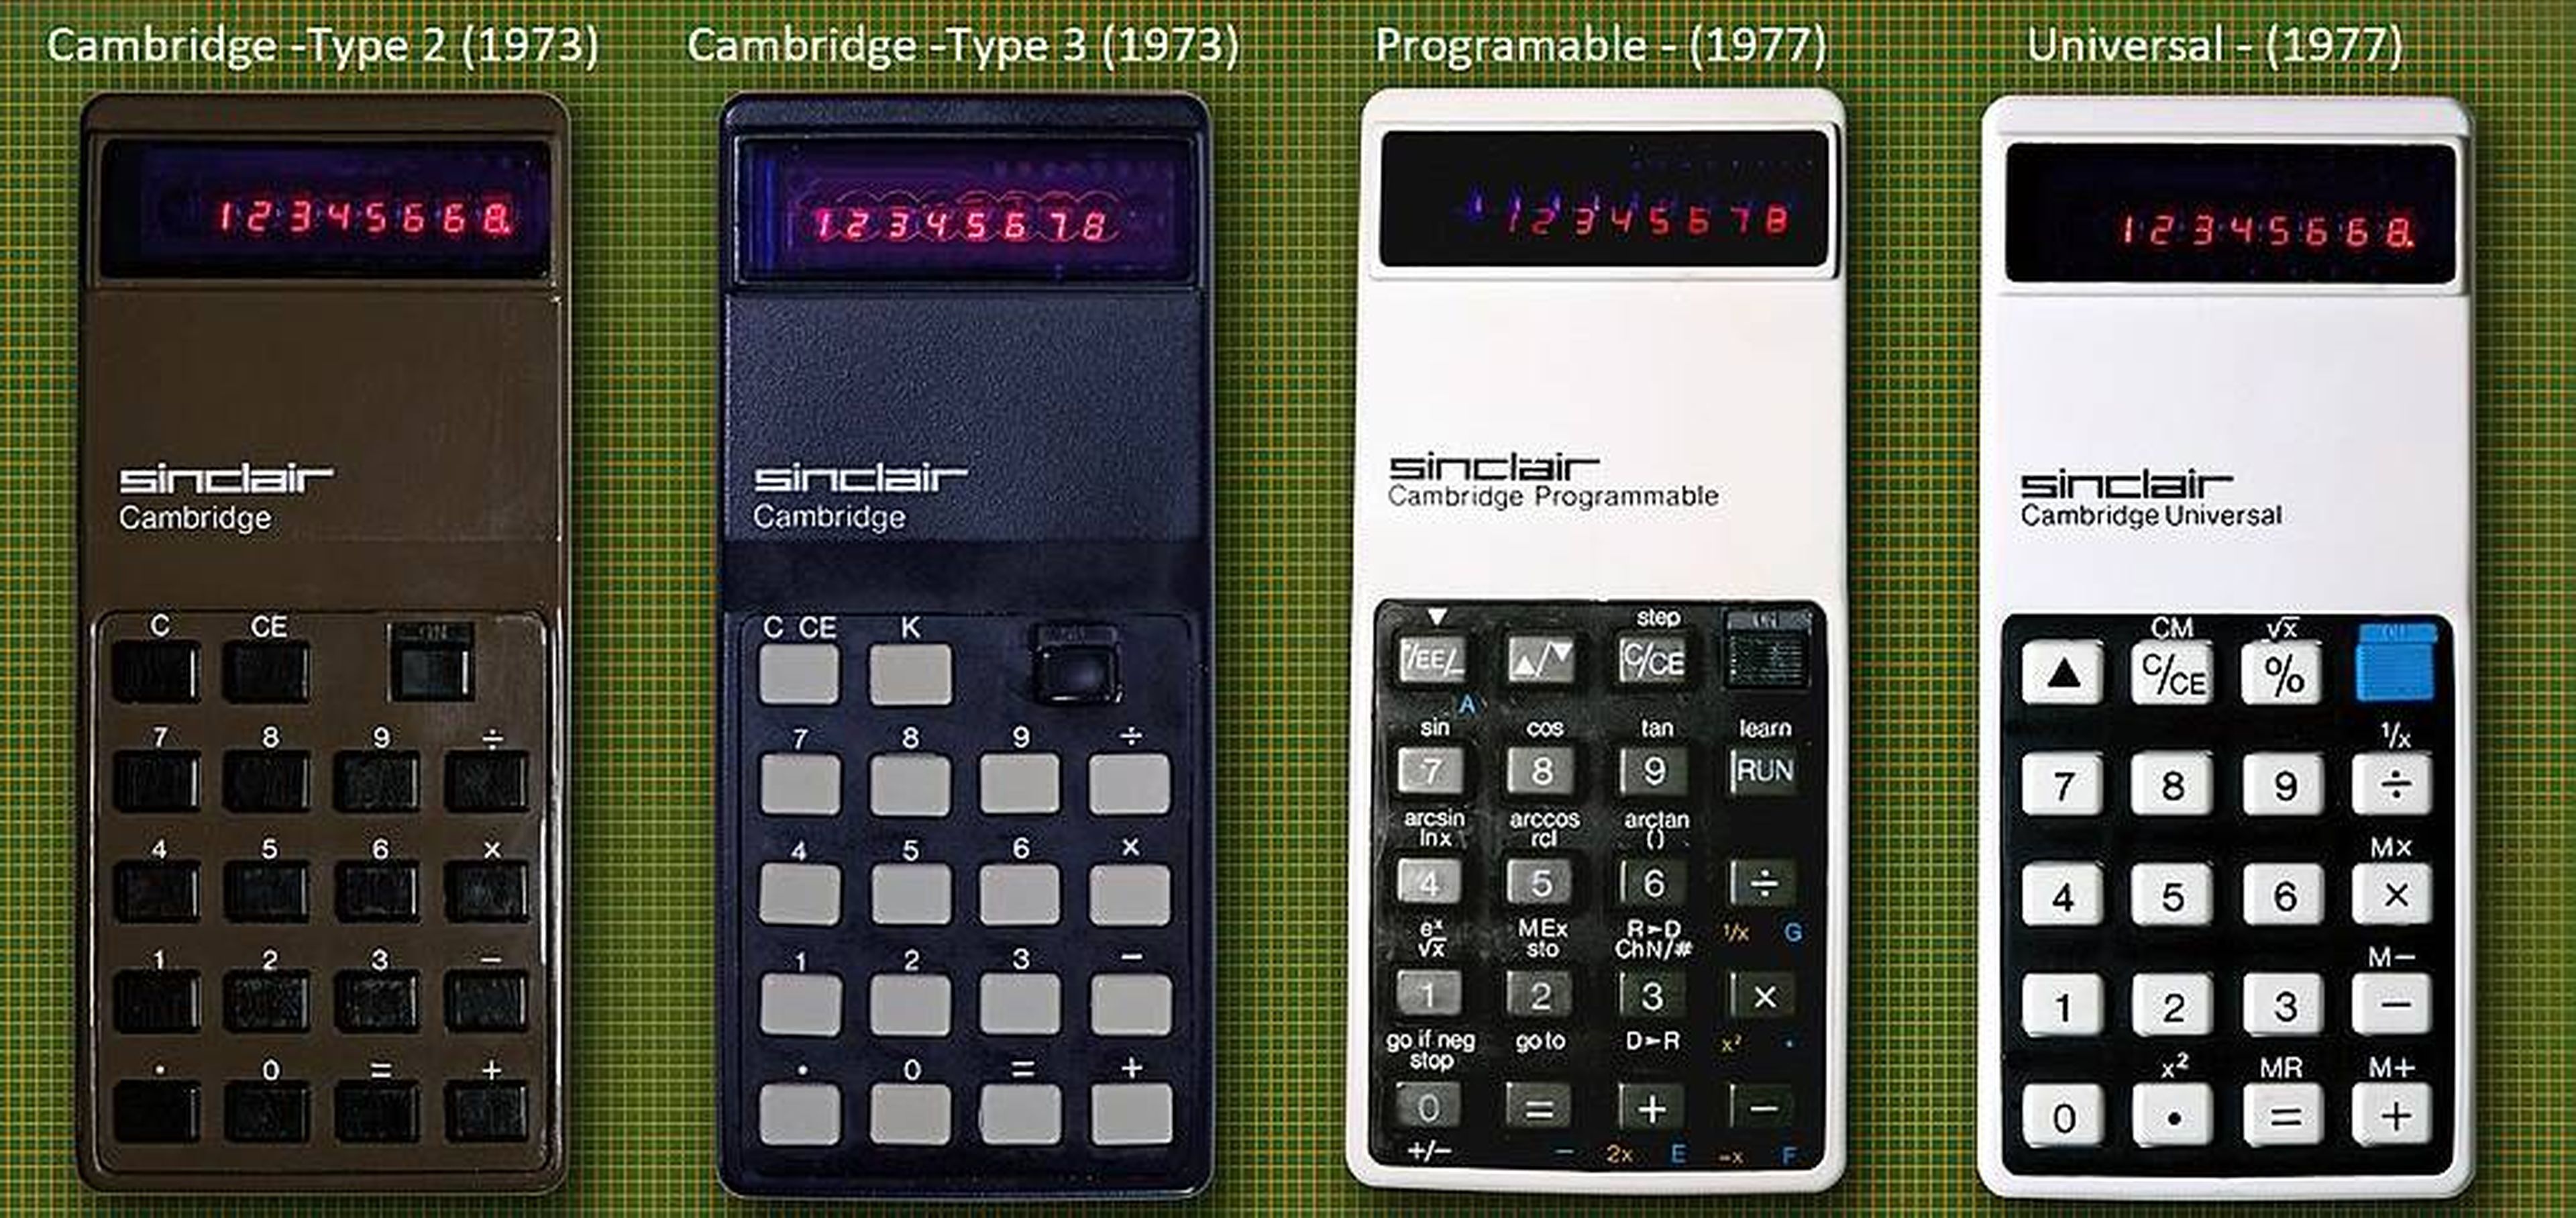 Un repaso a los primeros modelos de la calculadora Sinclair Cambridge.